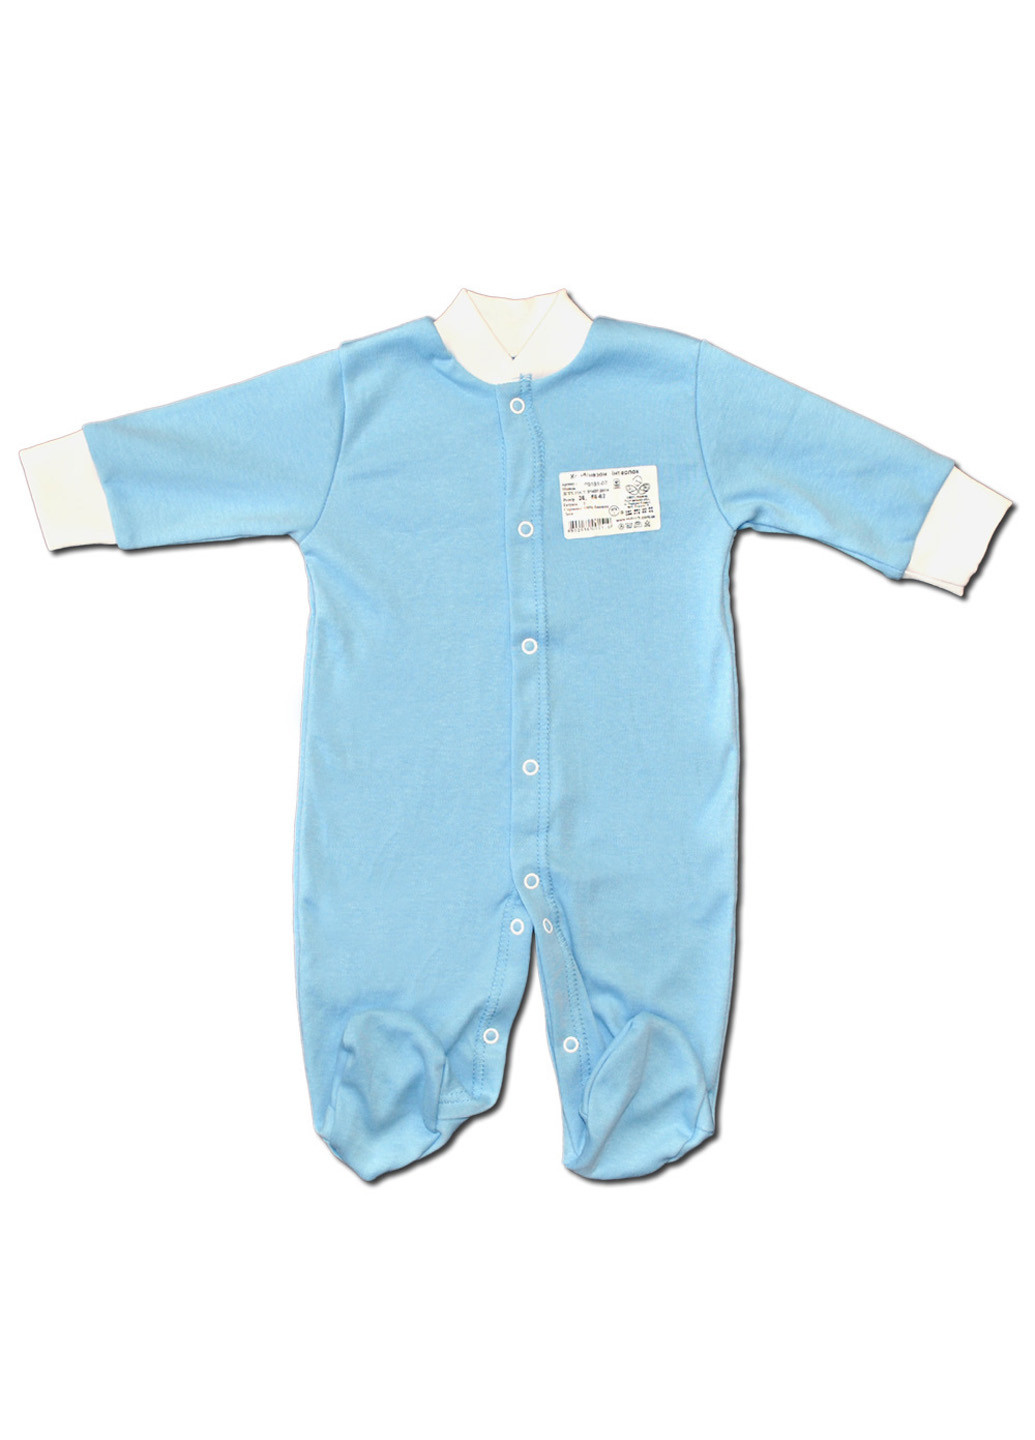 Голубой демисезонный комплект одежды для малыша №6 (4 предмета) тм коллекция капитошка белый Родовик комплект - 05БХ